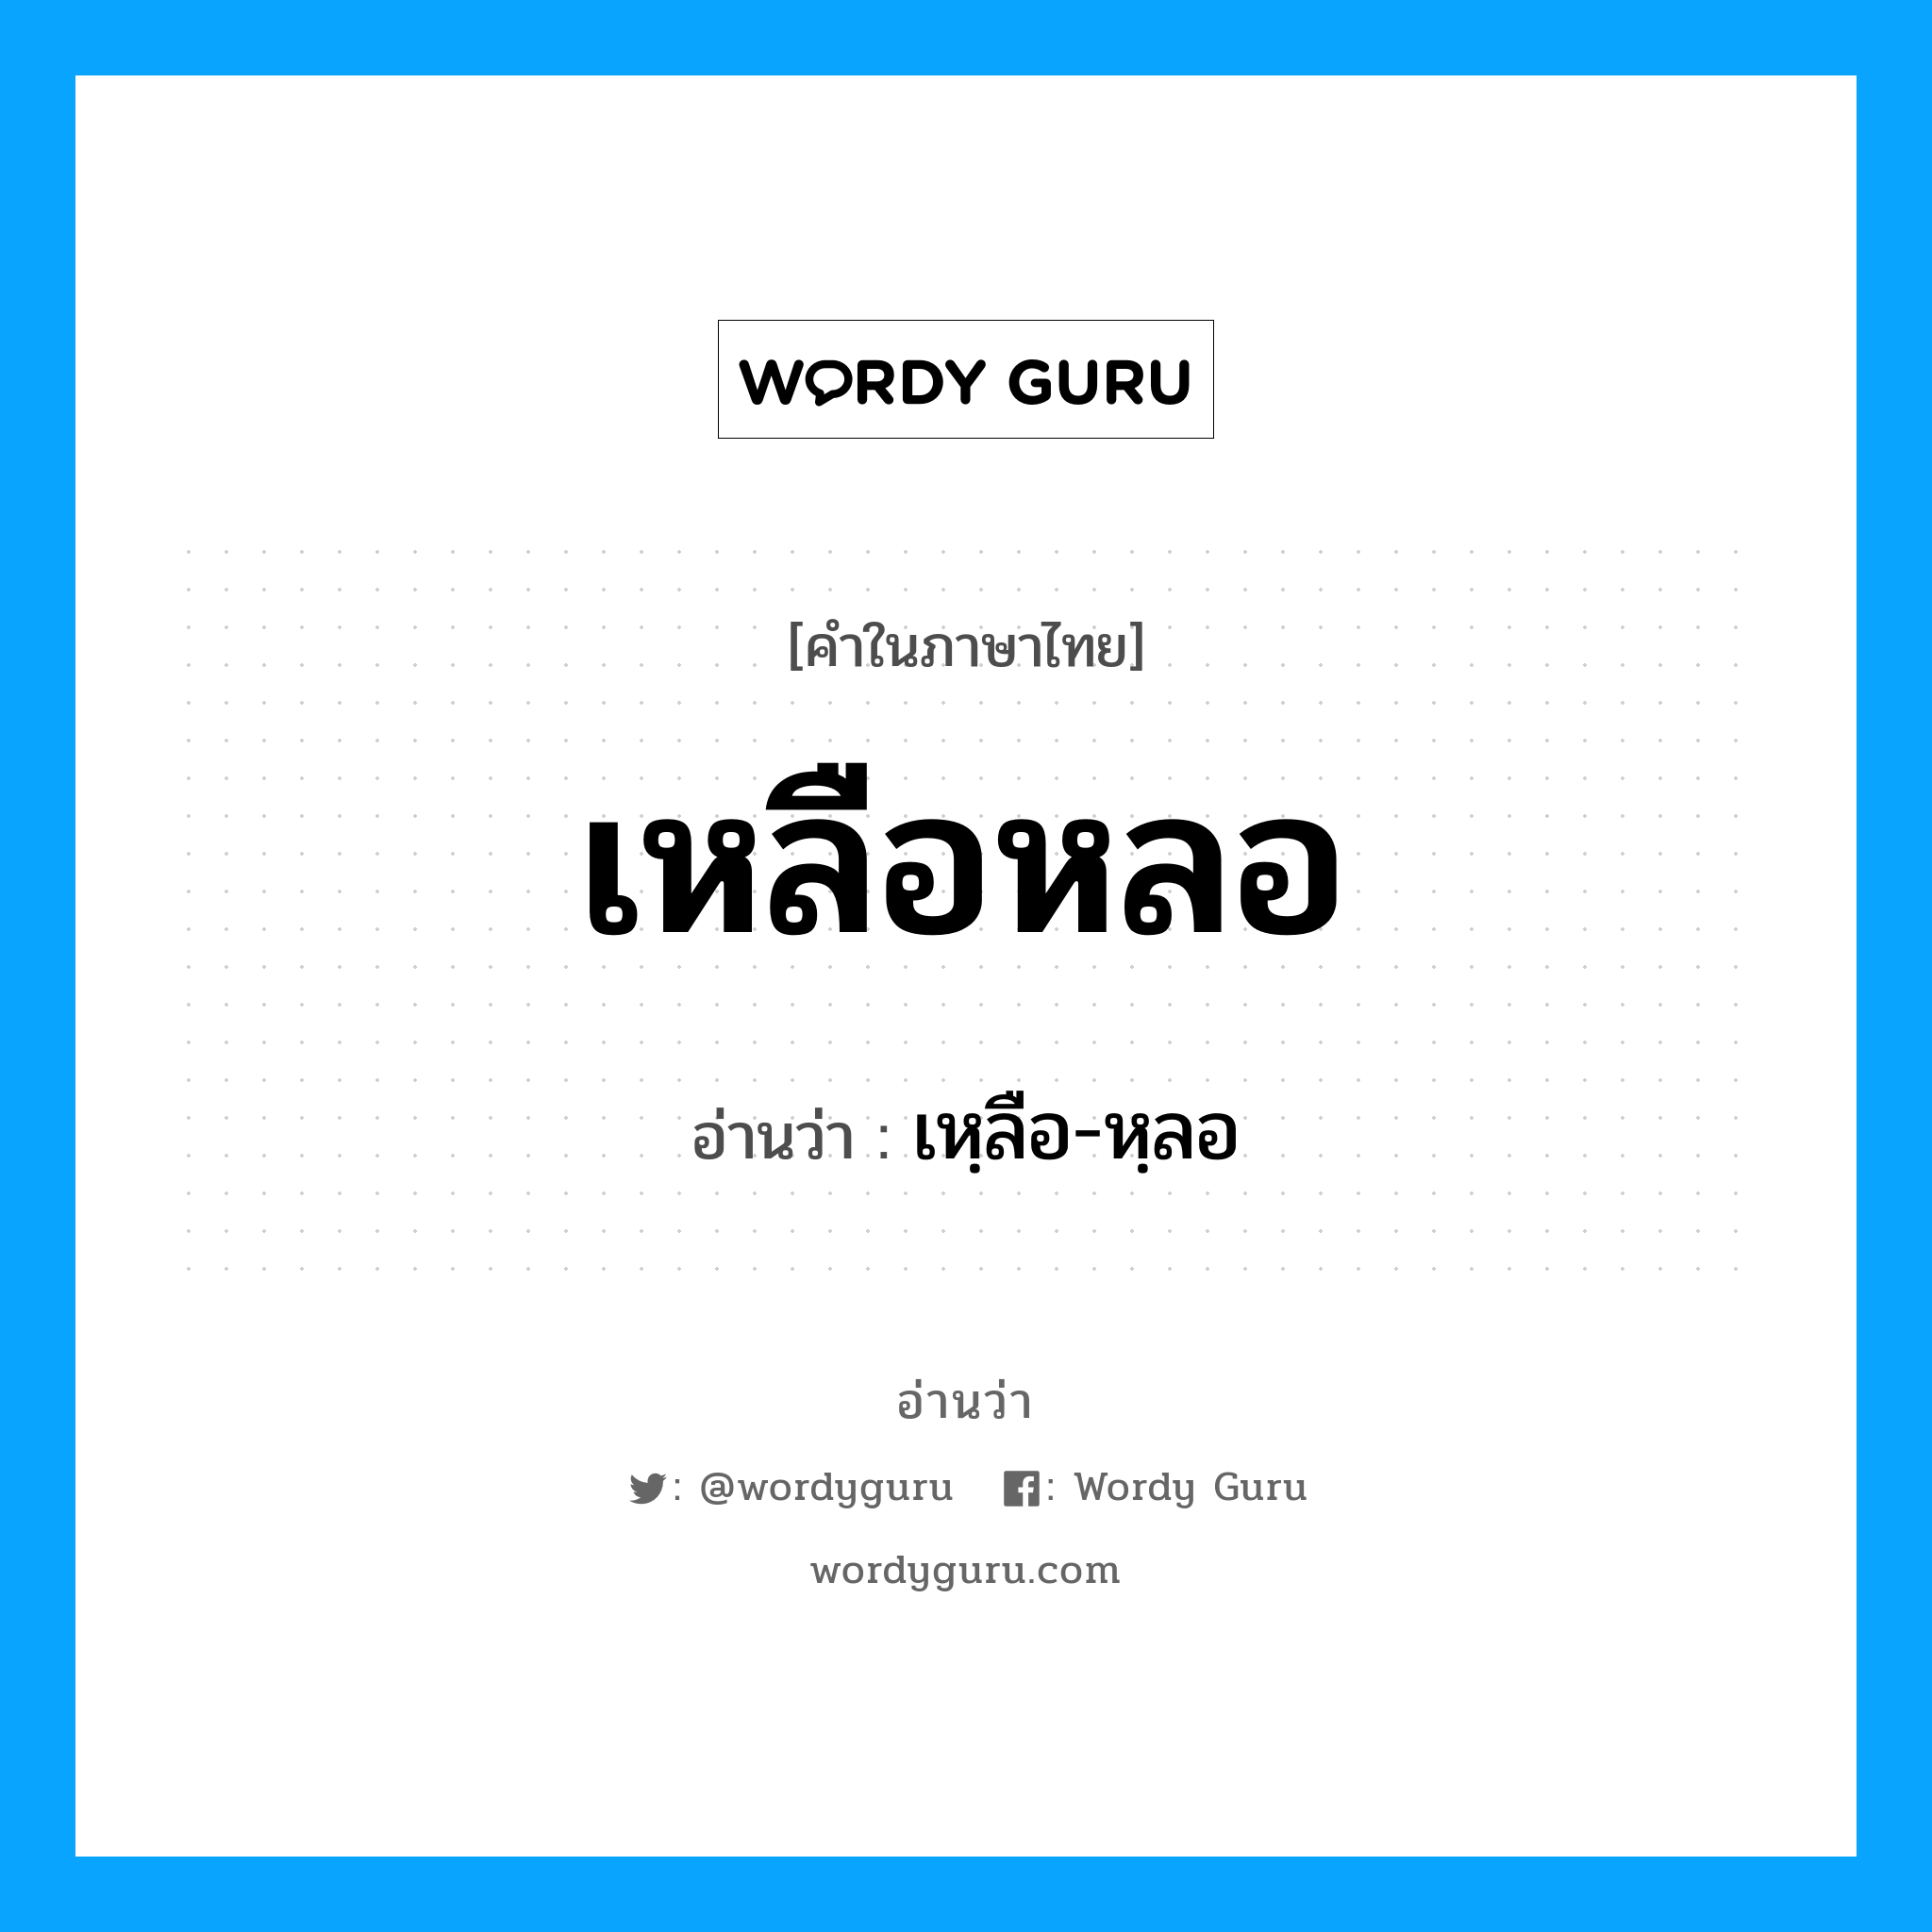 เหฺลือ-หฺลอ เป็นคำอ่านของคำไหน?, คำในภาษาไทย เหฺลือ-หฺลอ อ่านว่า เหลือหลอ